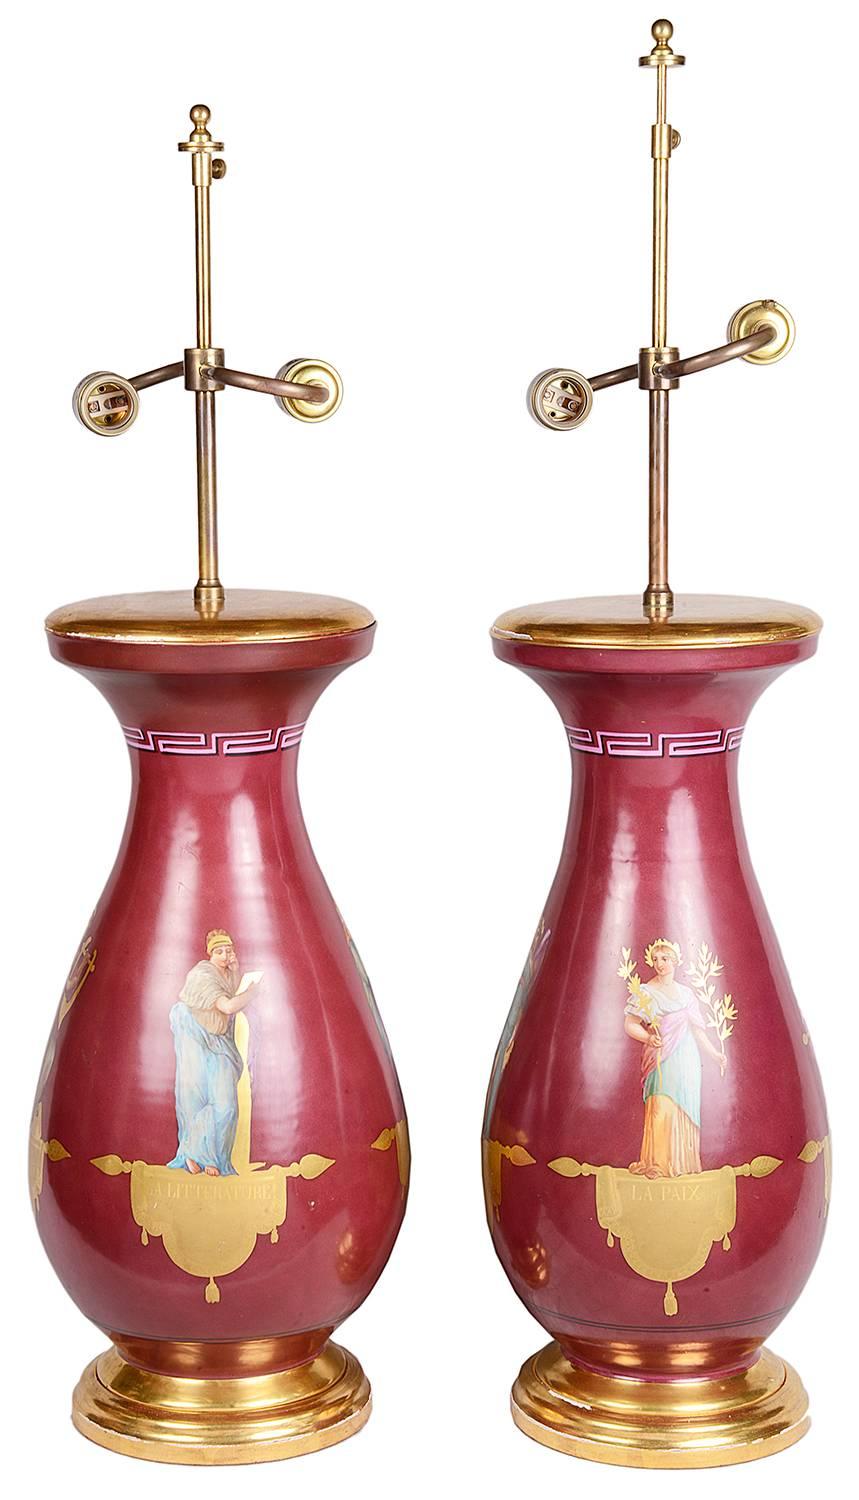 Une paire de vases ou lampes en porcelaine de Paris du 19ème siècle de très bonne qualité. Chacune représente des figures romaines classiques sur un fond bordeaux.